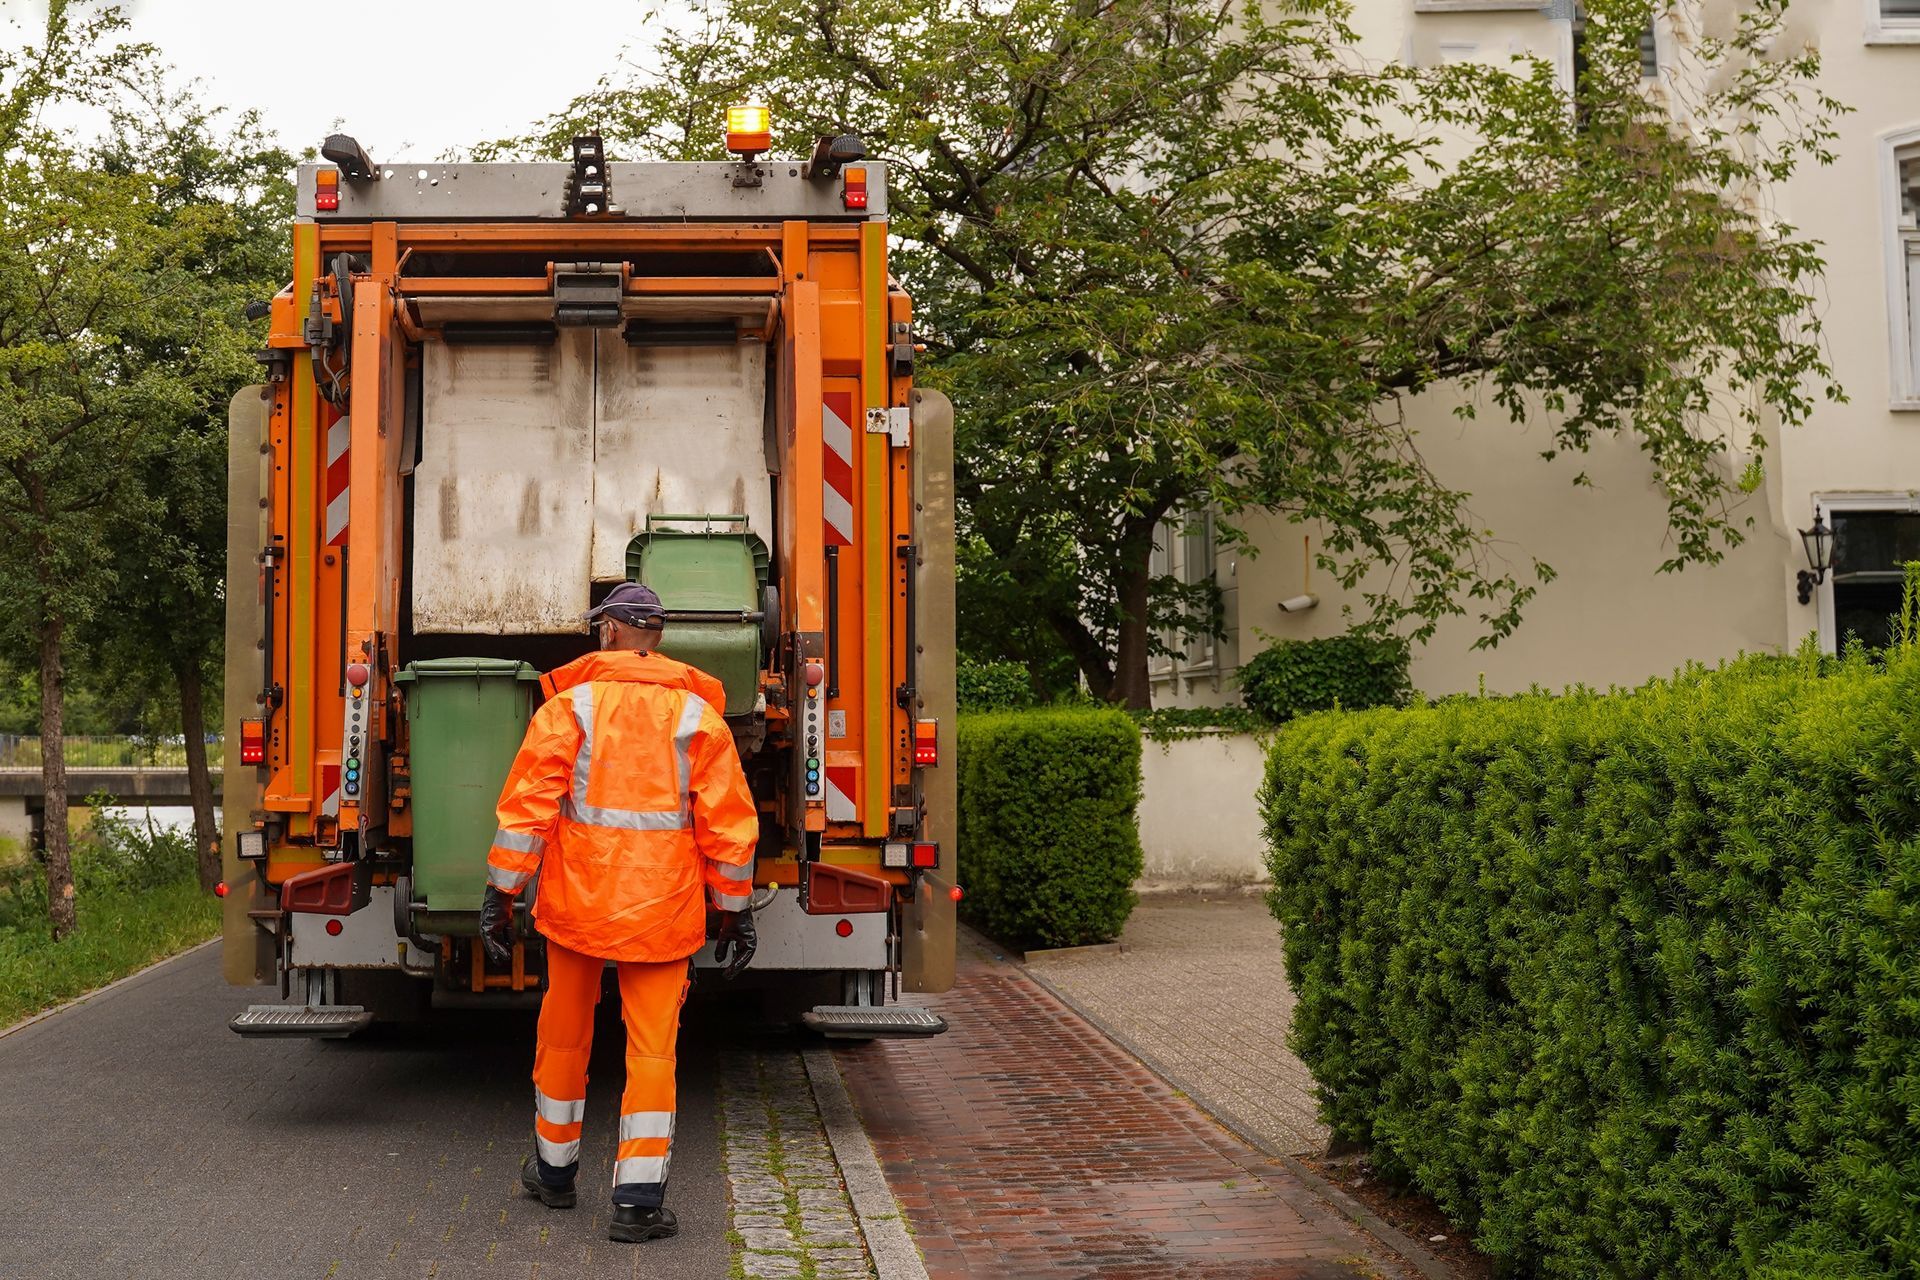 a man in an orange jacket is walking towards a garbage truck .